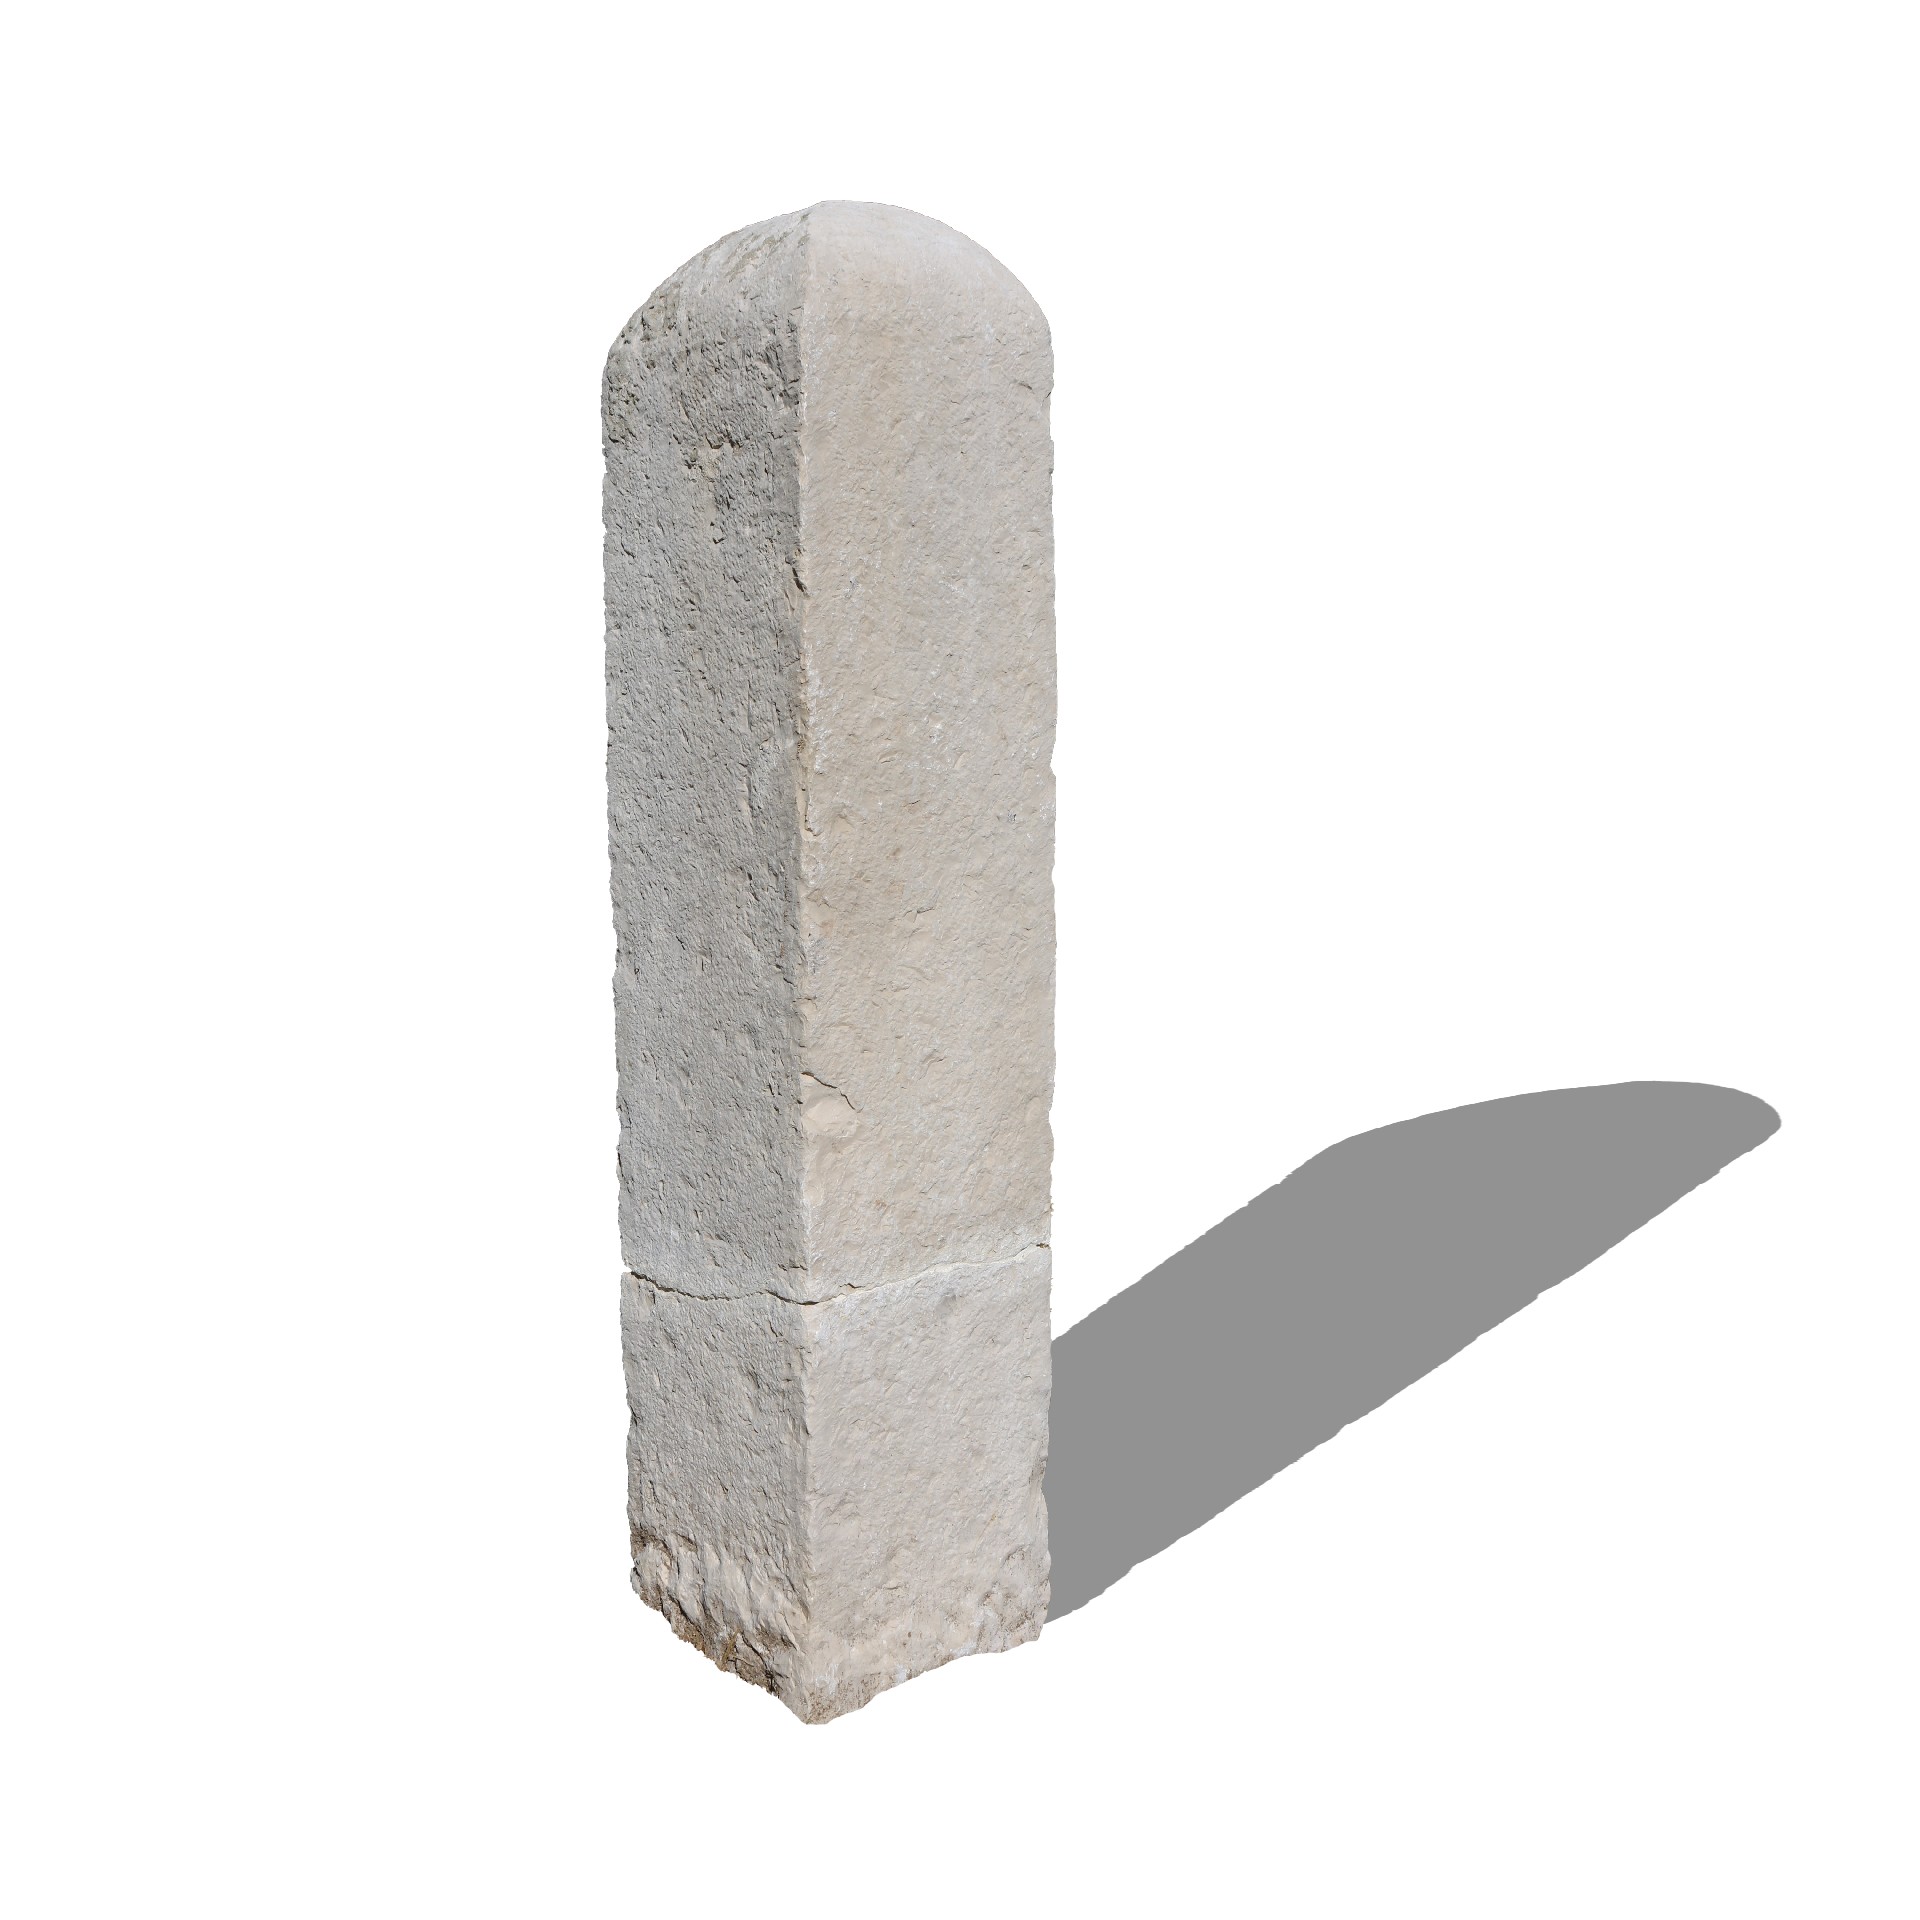 Antica colonna in pietra. Epoca 1900. - Colonne antiche - Architettura - Prodotti - Antichità Fiorillo